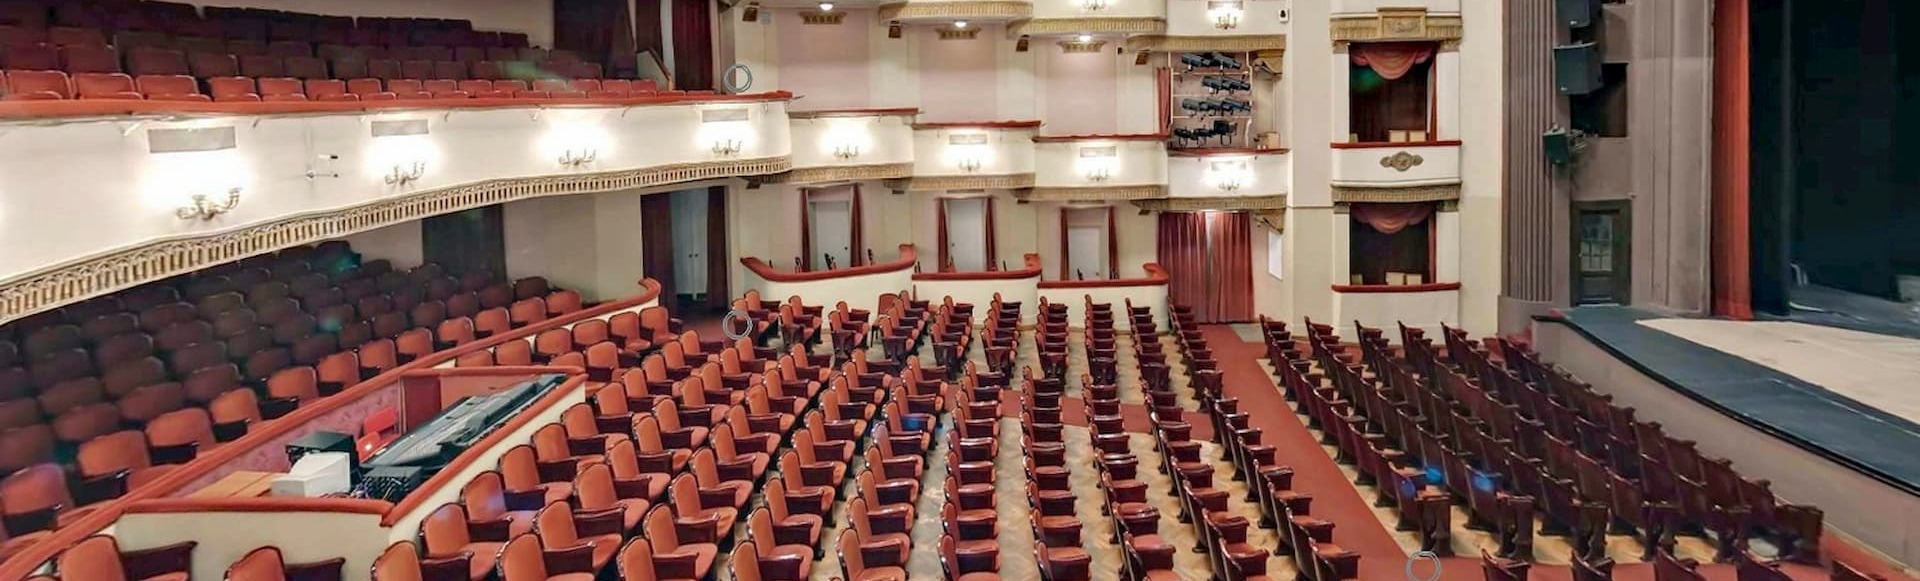 схема зала вахтанговского театра